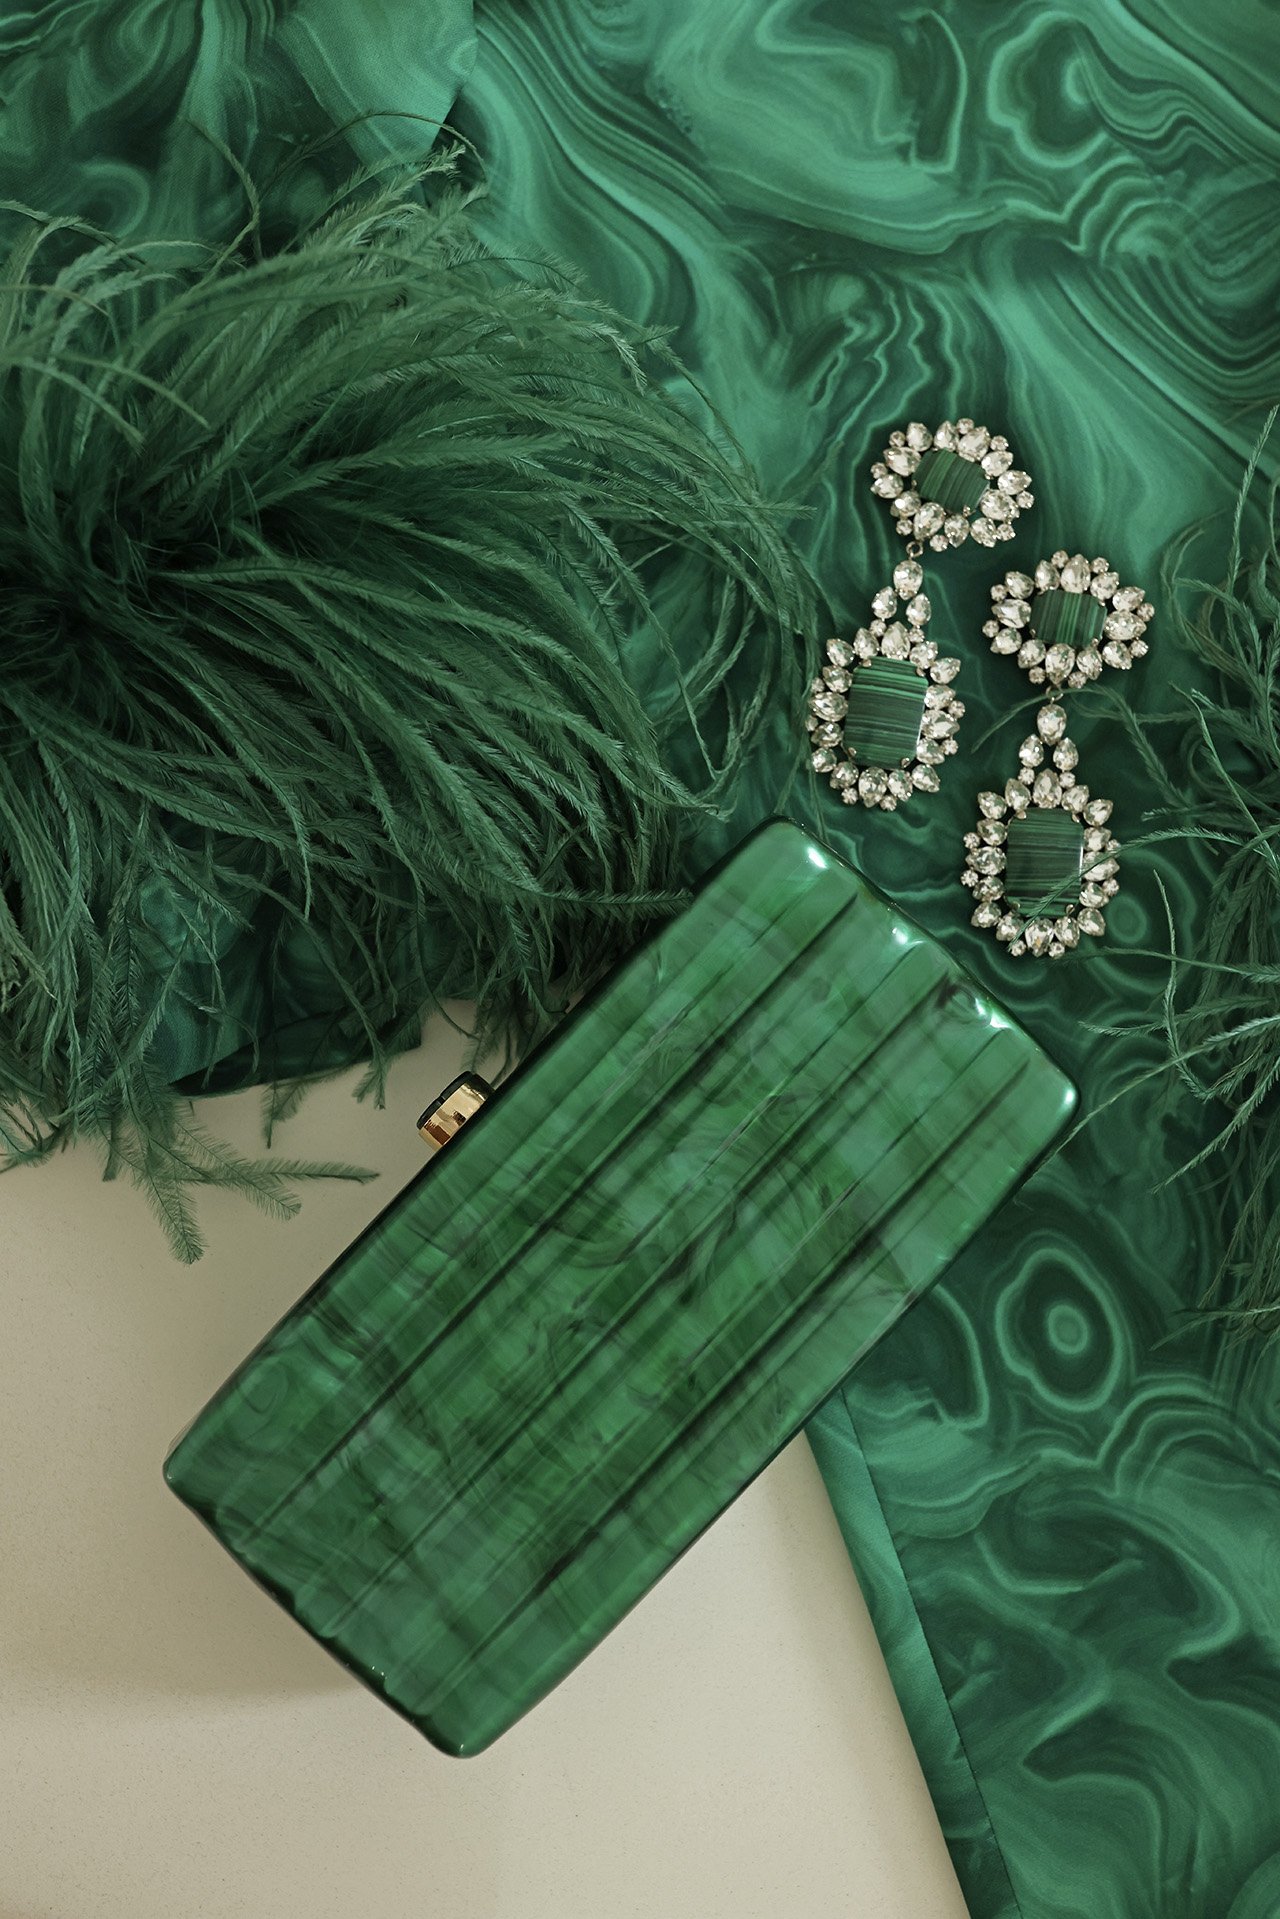 acrylic clutch, green marbled clutch, amazon clutch purse